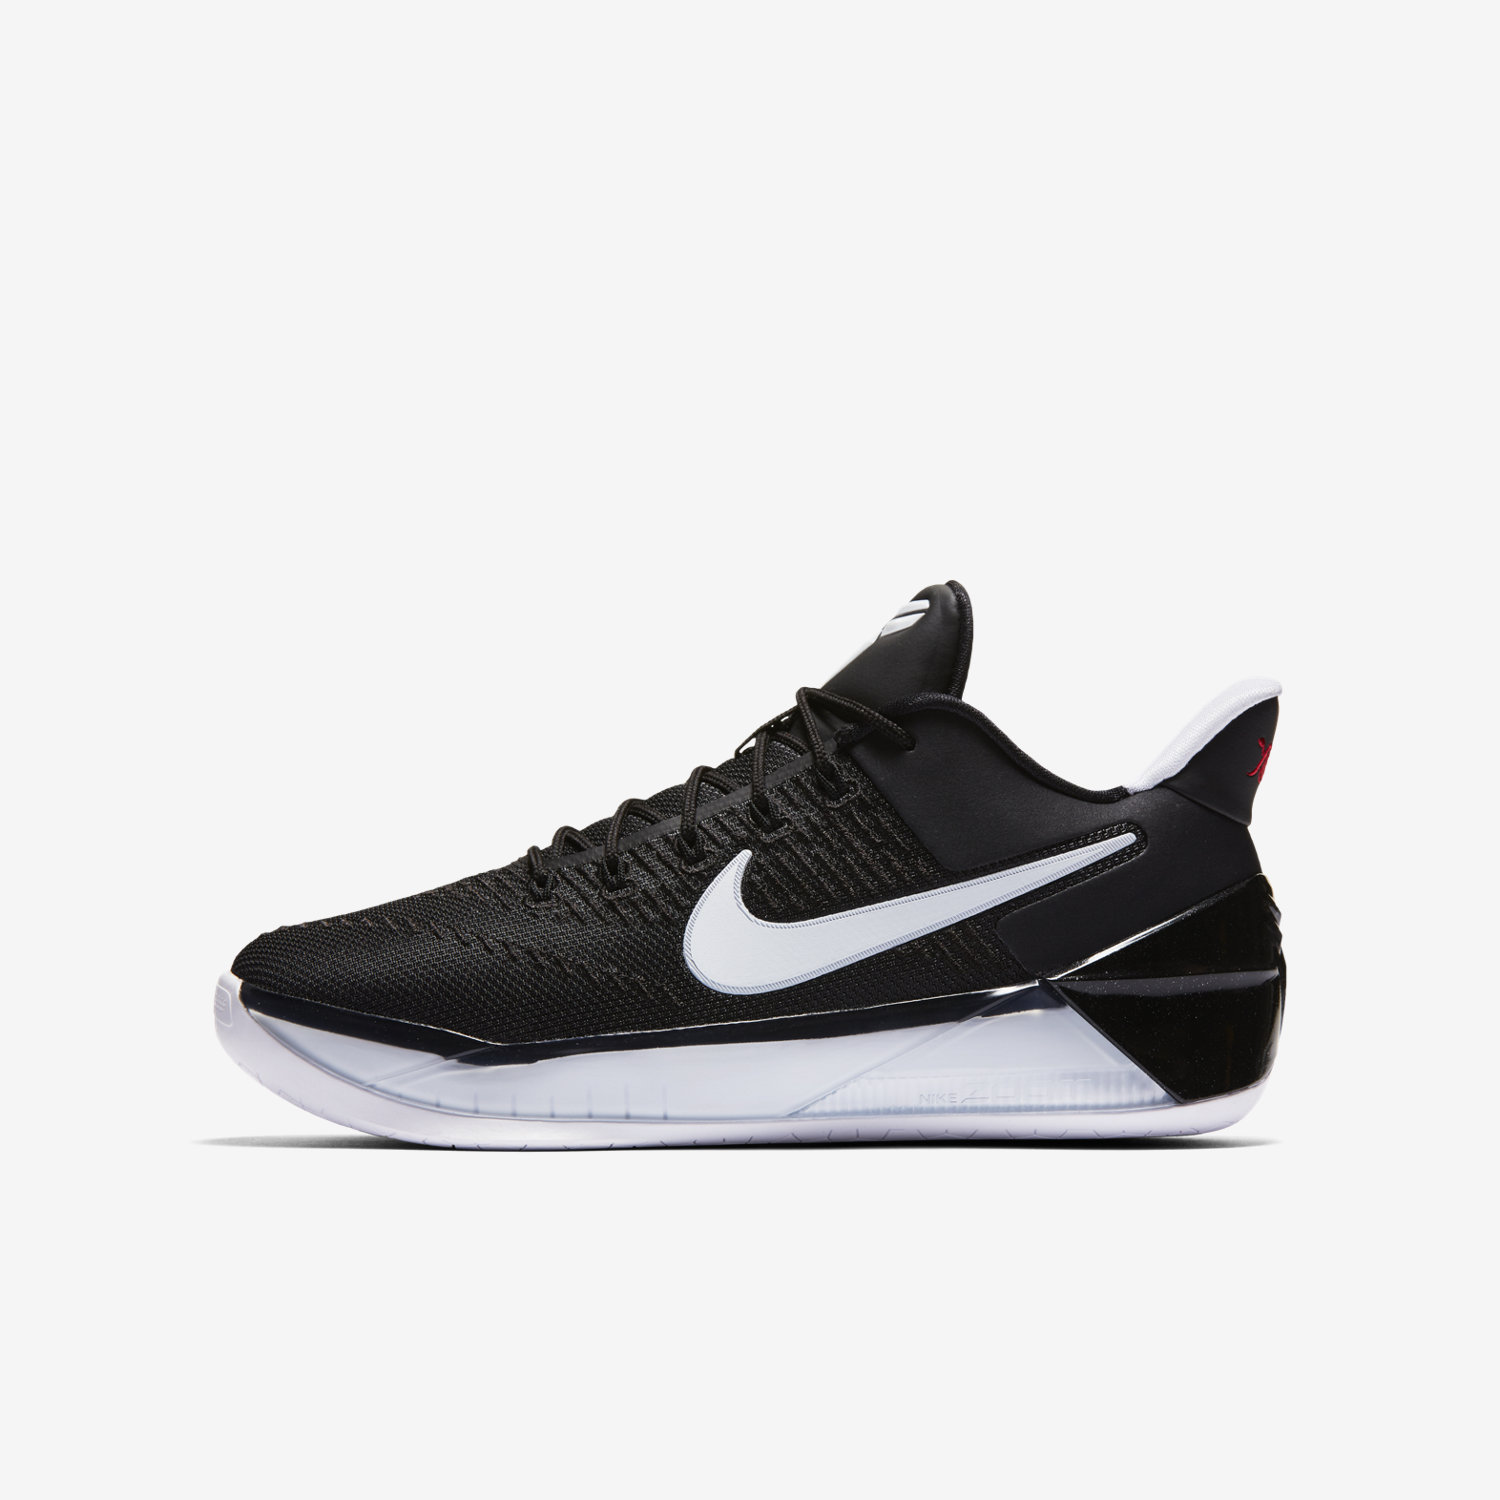 παπουτσια outdoor για αγορια Nike Kobe A.D. μαυρα/μαυρα/μαυρα 87437133UX